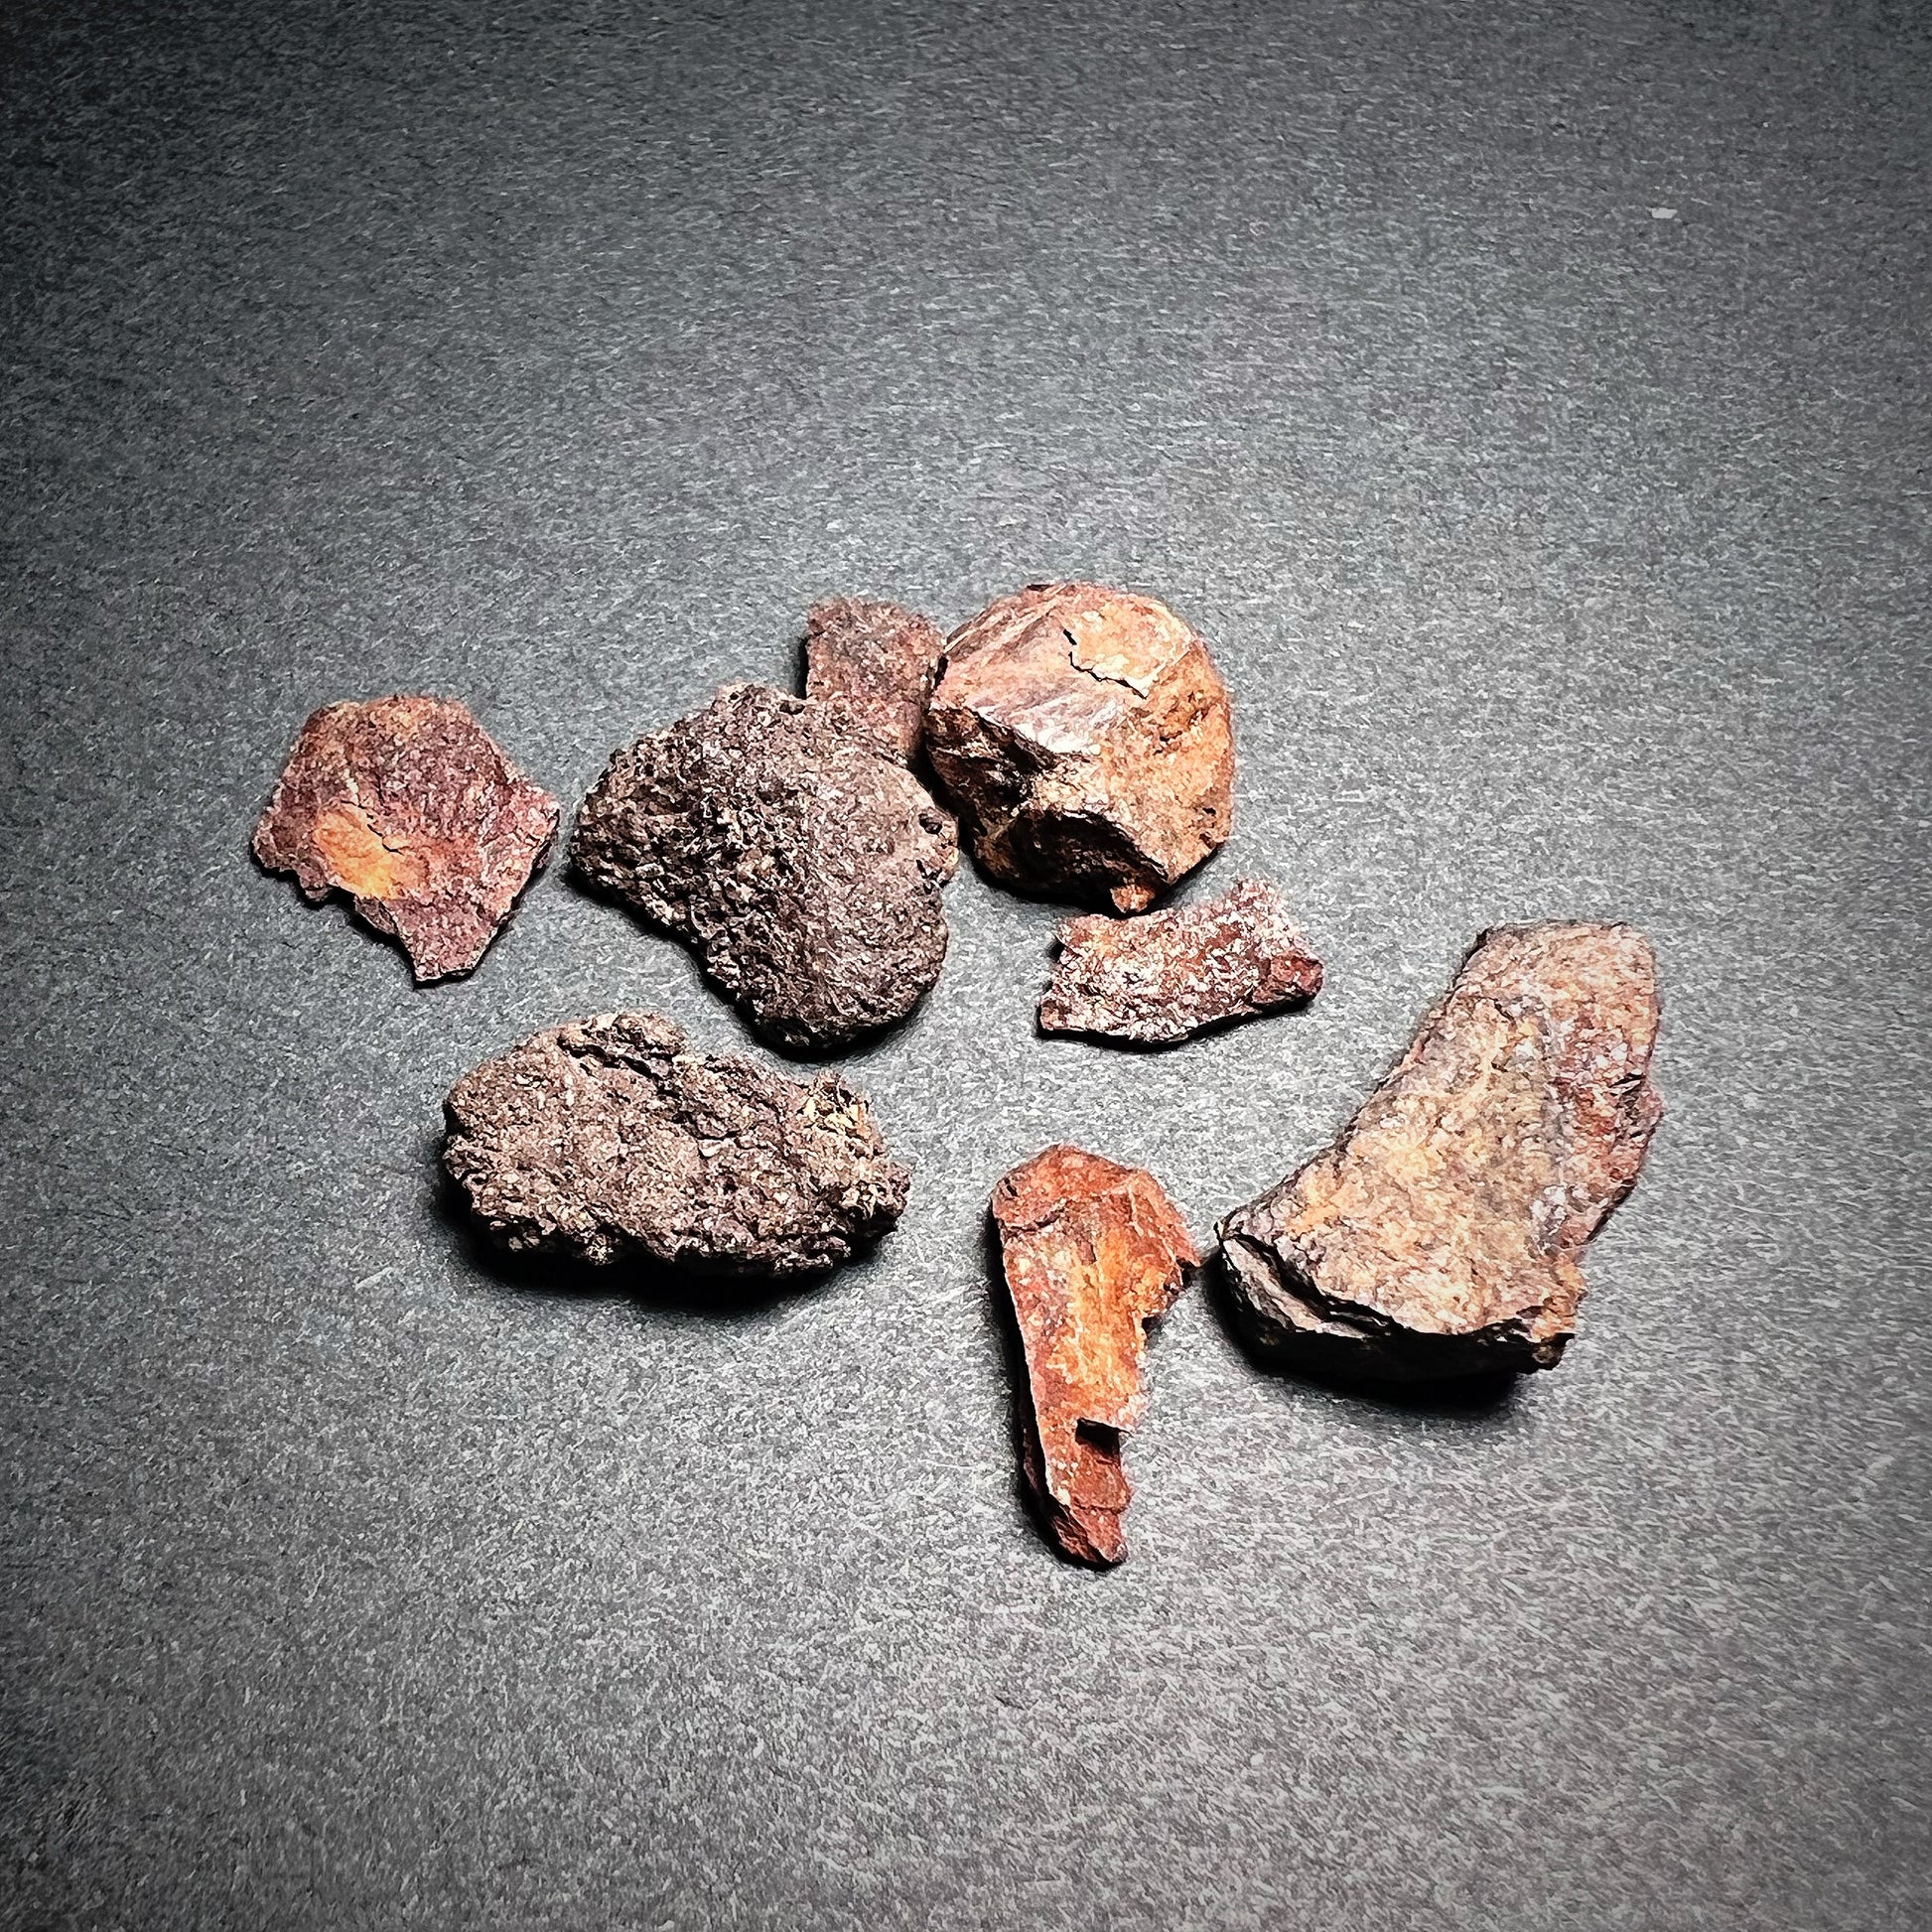 Meteorite fragments